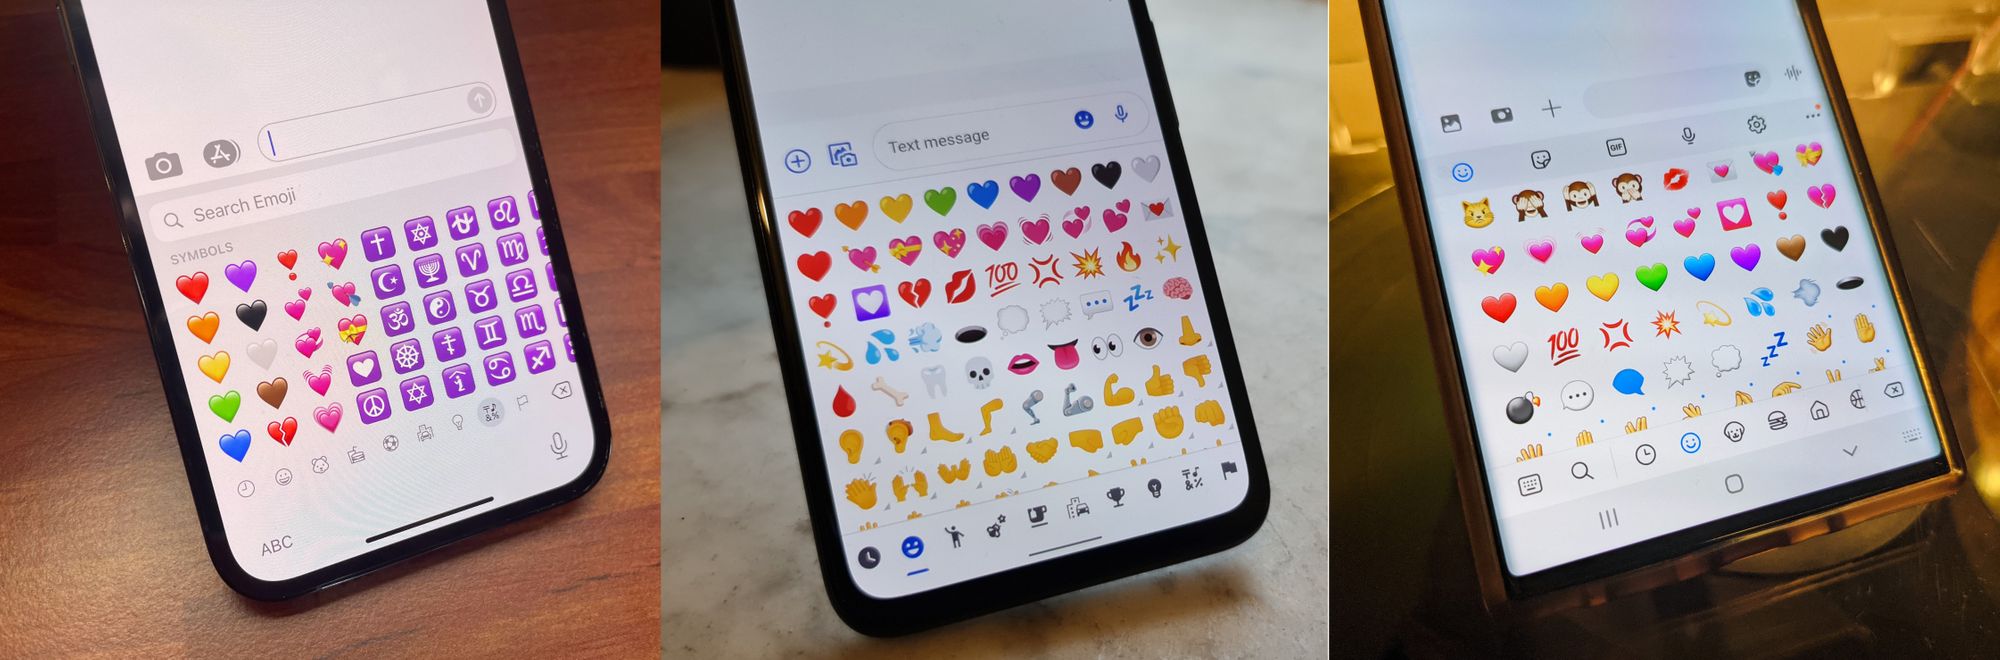 kalp-emoji-klavye-iphone-piksel-galaksi